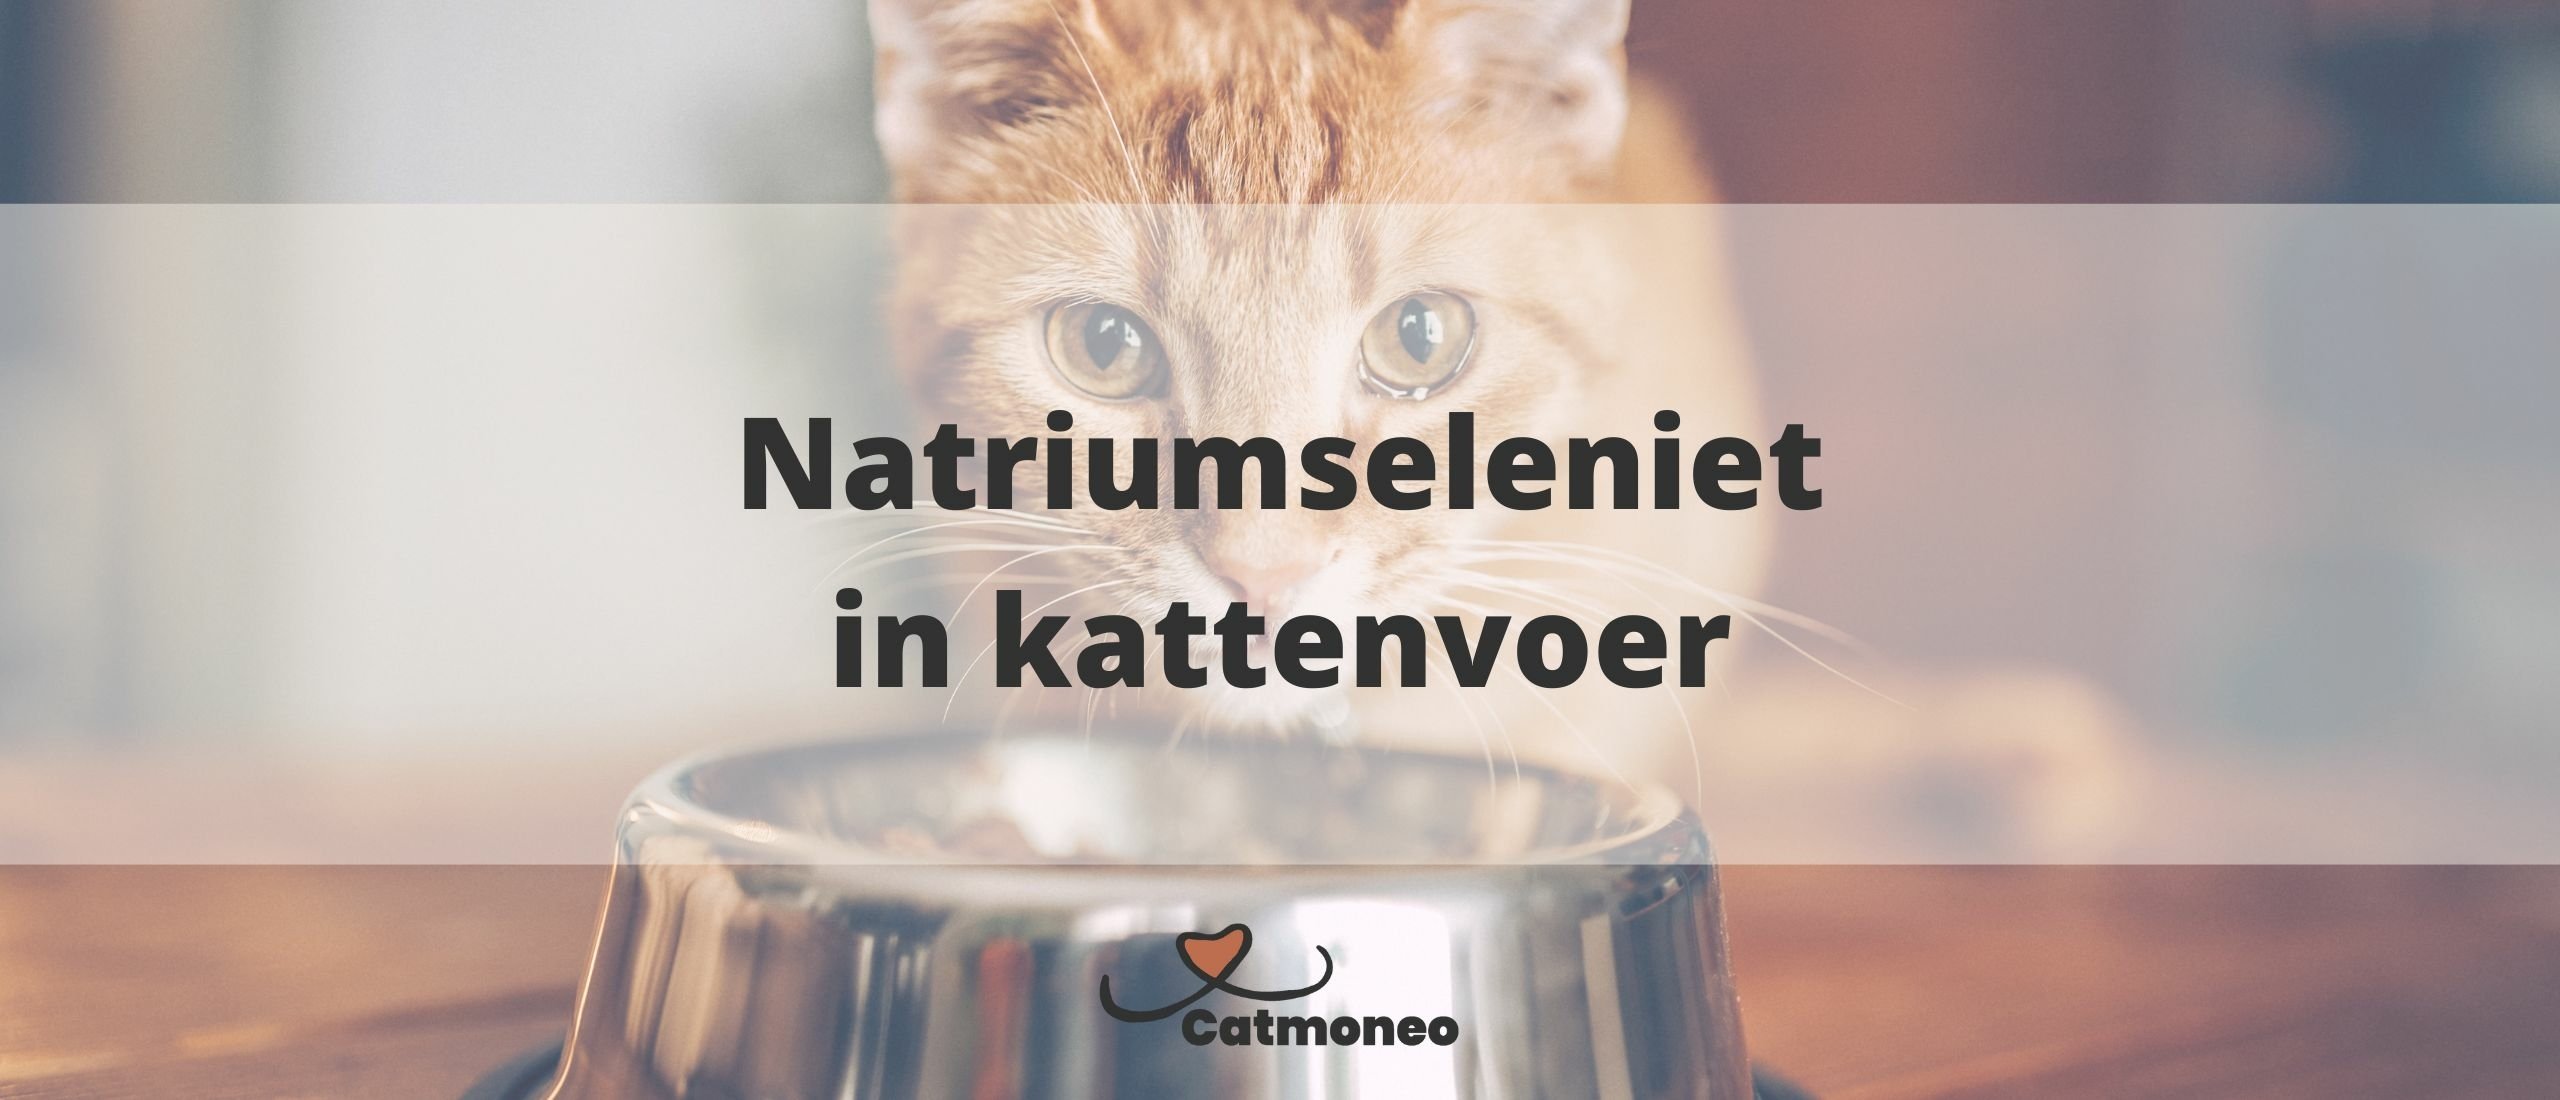 Natriumseleniet in kattenvoer: Gevaarlijk of niet?